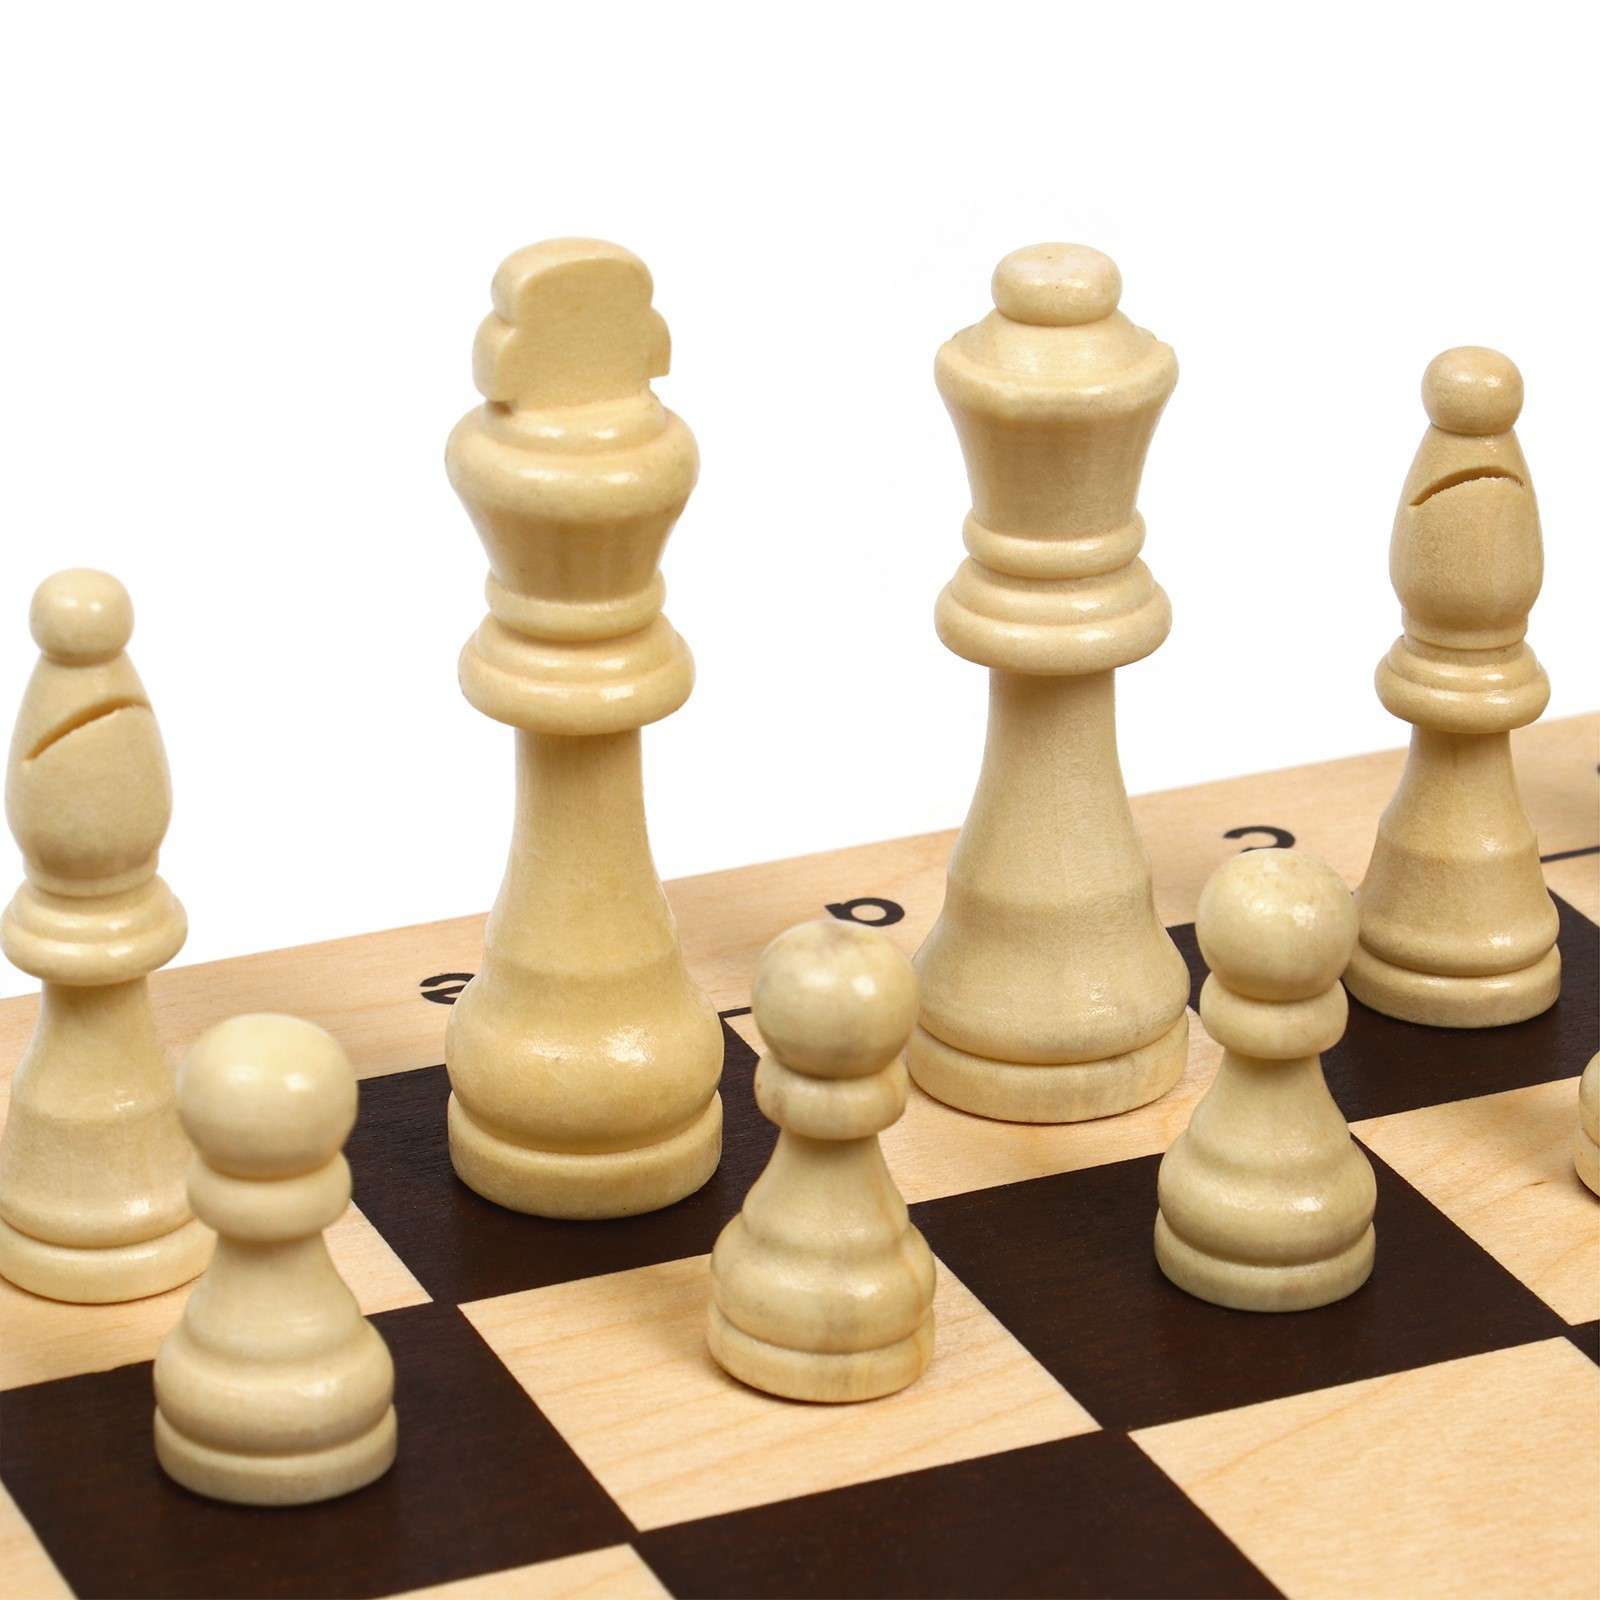 Шахматы деревянные гроссмейстерские, турнирные 43х43 см, король h-9 см 2879454